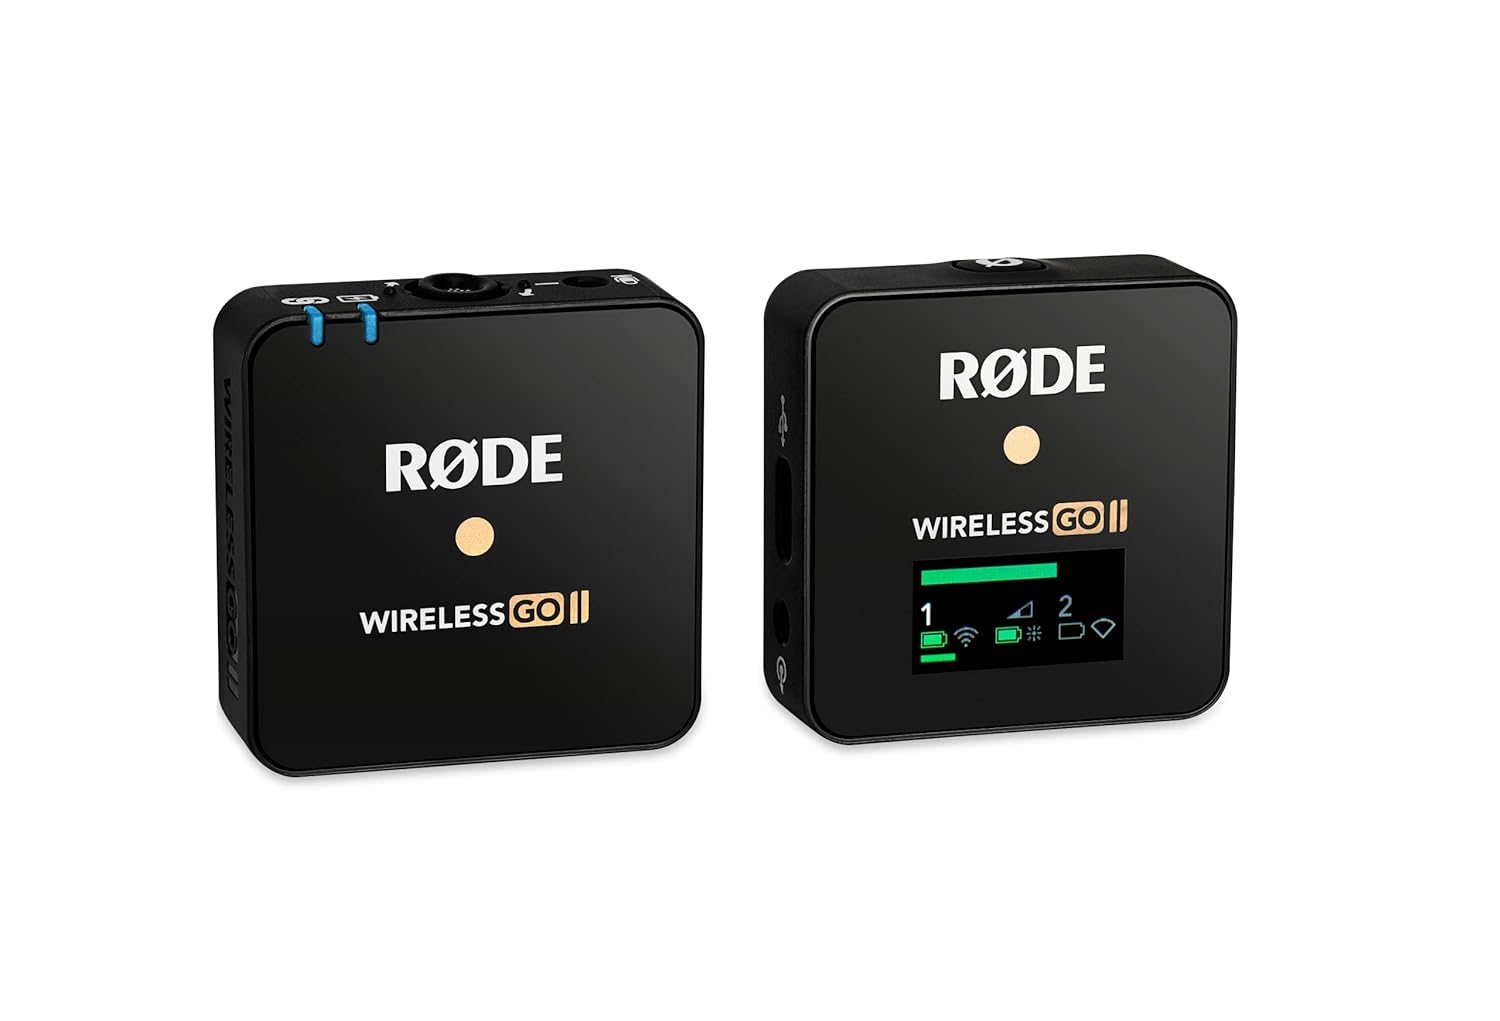 (Open Box) Rode Wireless GO II Single Channel Wireless Microphone System, Black (Model Number : Wireless Go II Single) Grade: A+